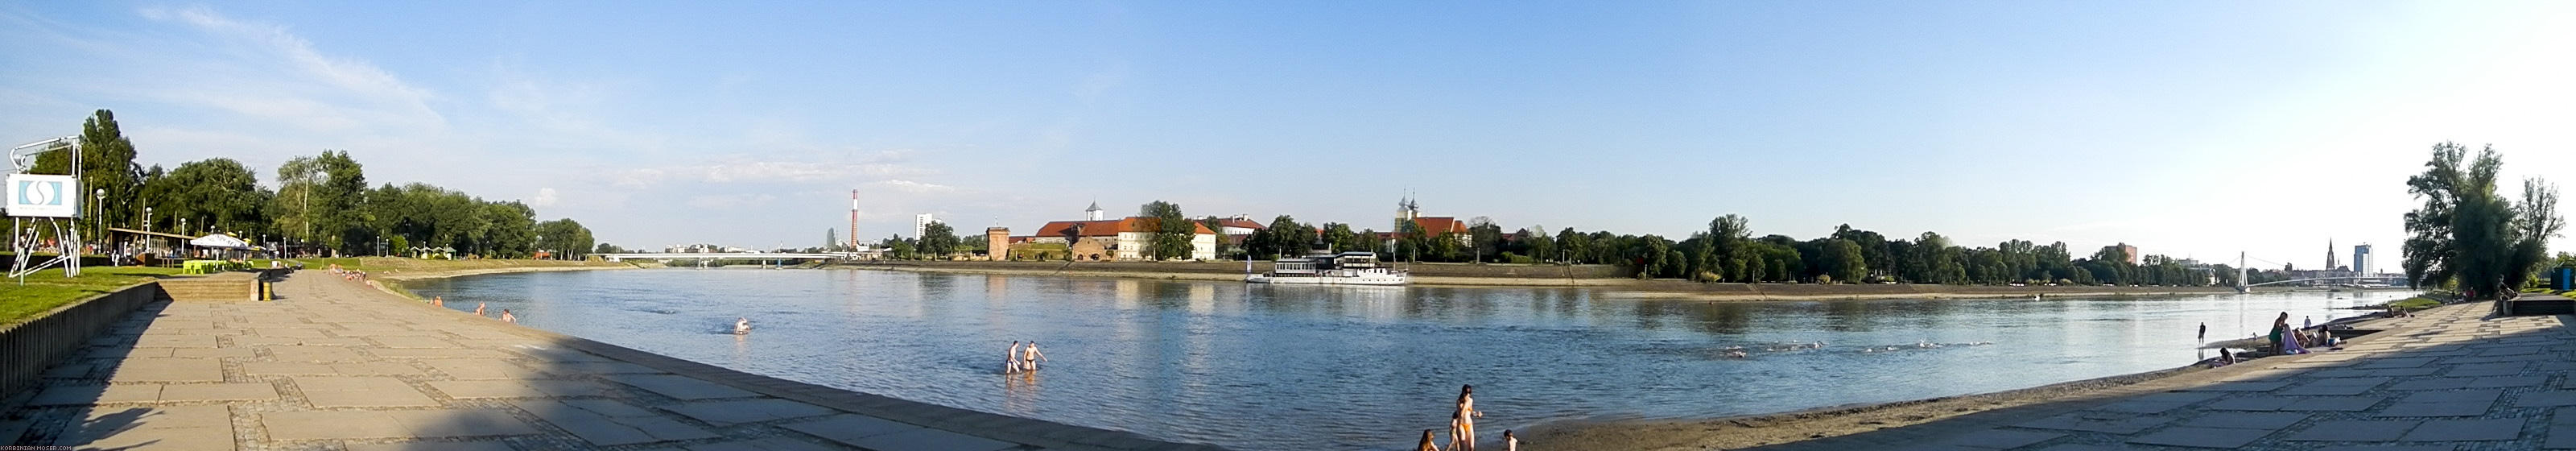 Osijek van egy gyönyörű strand, a Drava mentén.